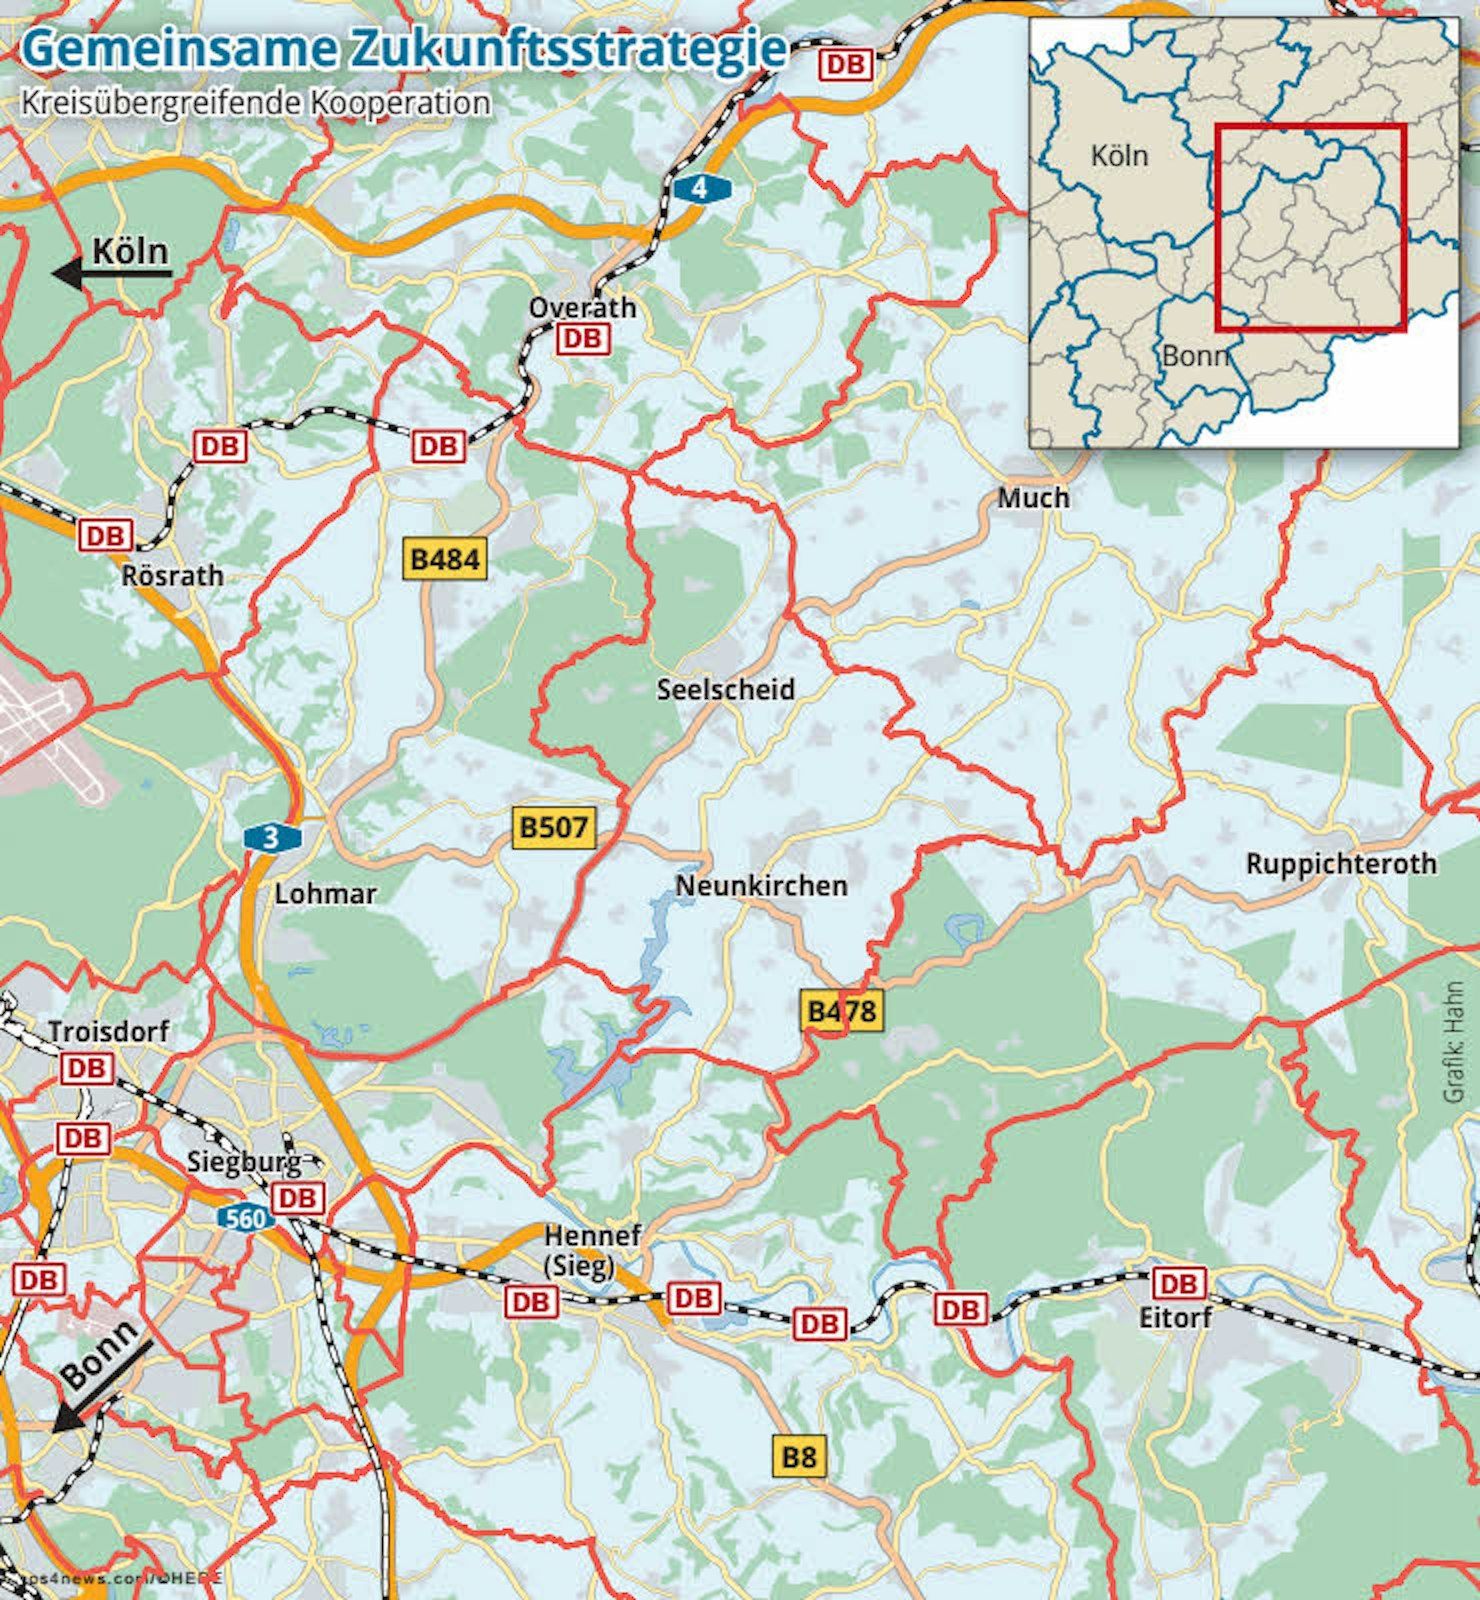 Die geografische Lage der fünf Kommunen: Overath, Hennef als „Eingangsdrehscheiben“. Dazwischen Neunkirchen-Seelscheid, Much und Ruppichteroth.